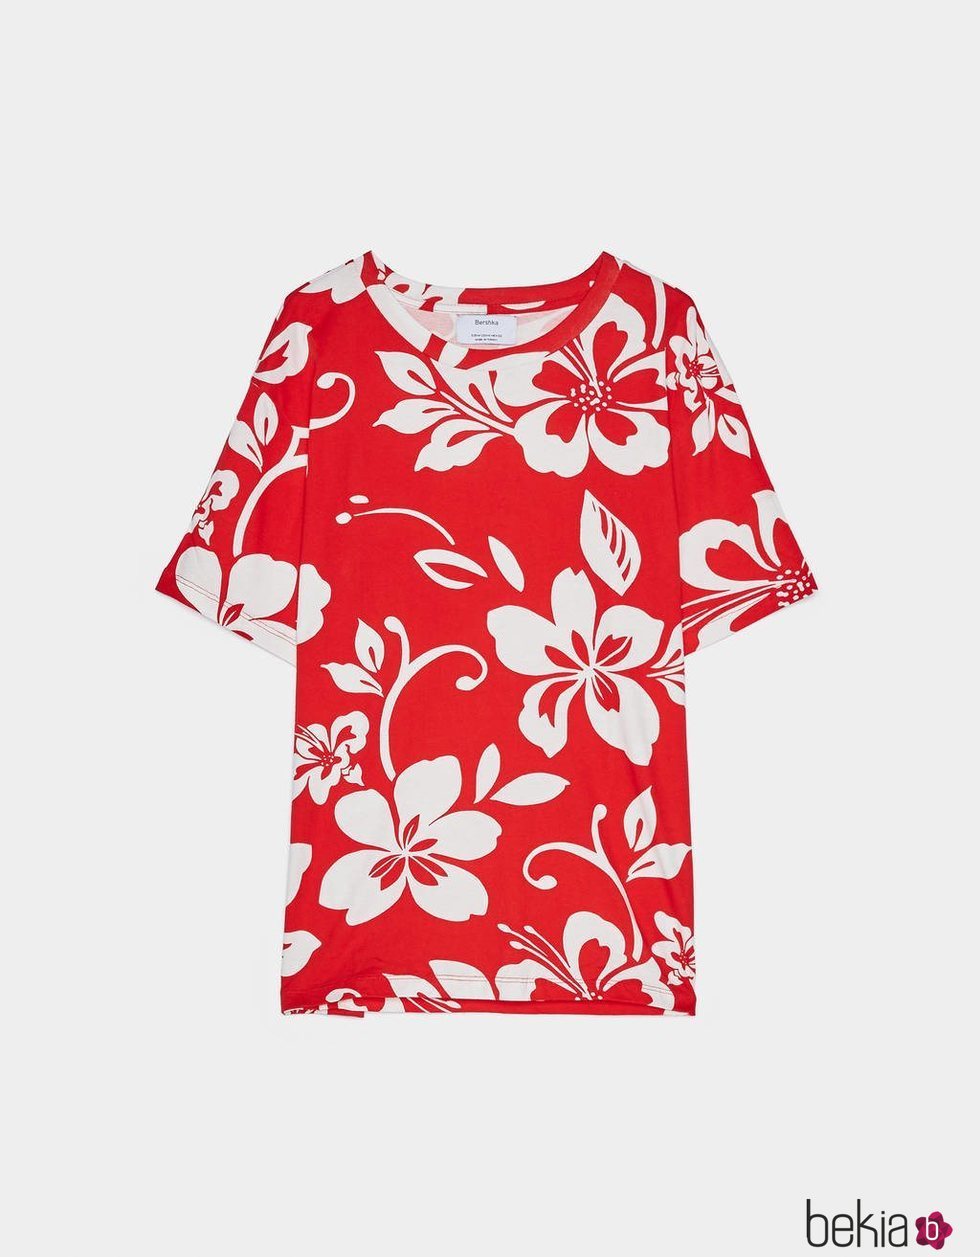 Camiseta estampado floral hawaiano rojo Bershka